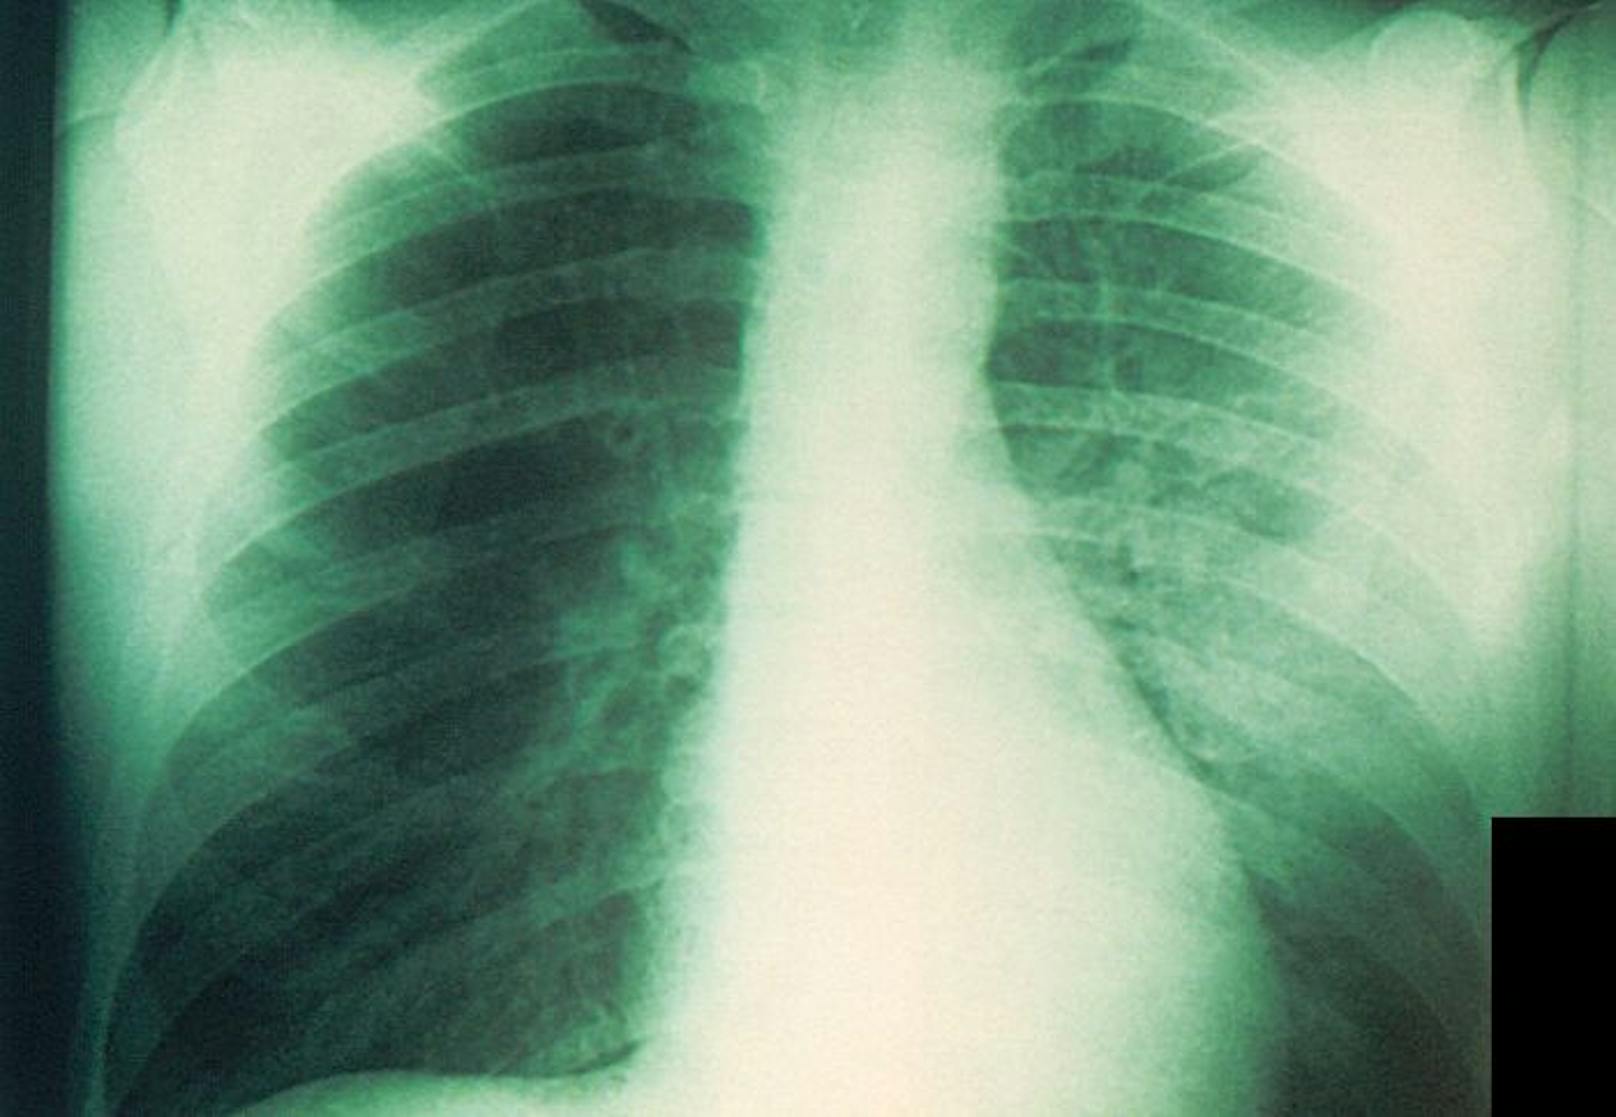 Röntgenbild einer mit Pest infizierten Lunge. (Symbolbild)